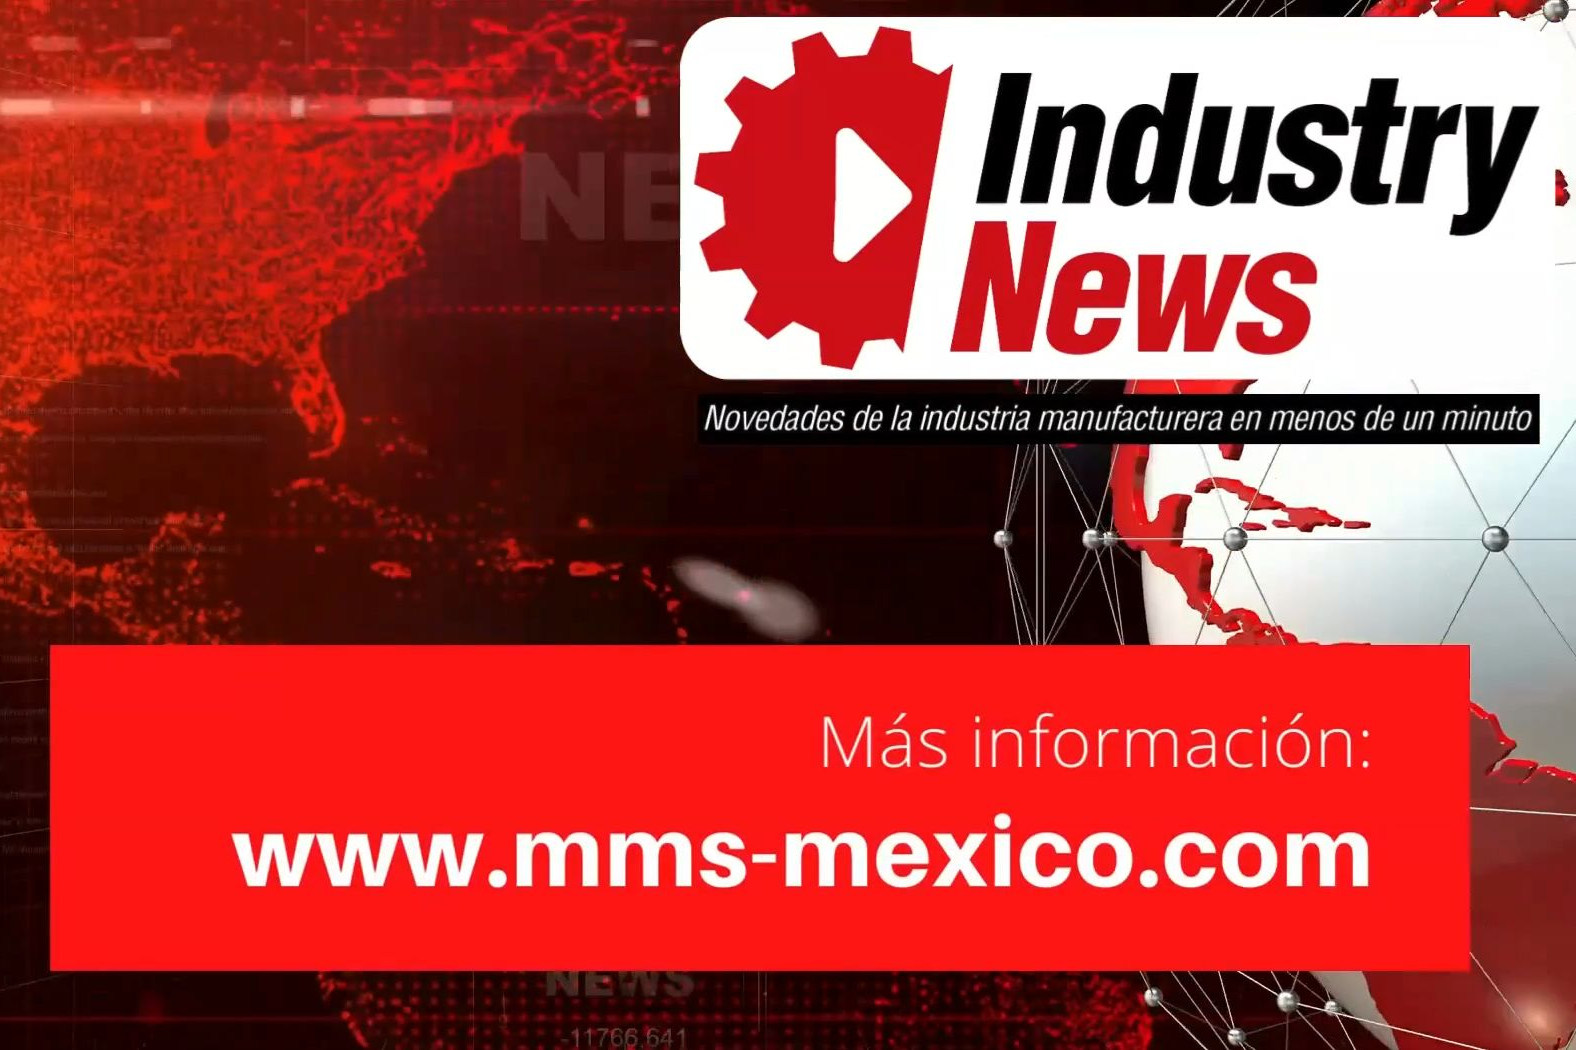 Industry News es un noticiero digital que presenta la información más destacada de la industria manufacturera en México.